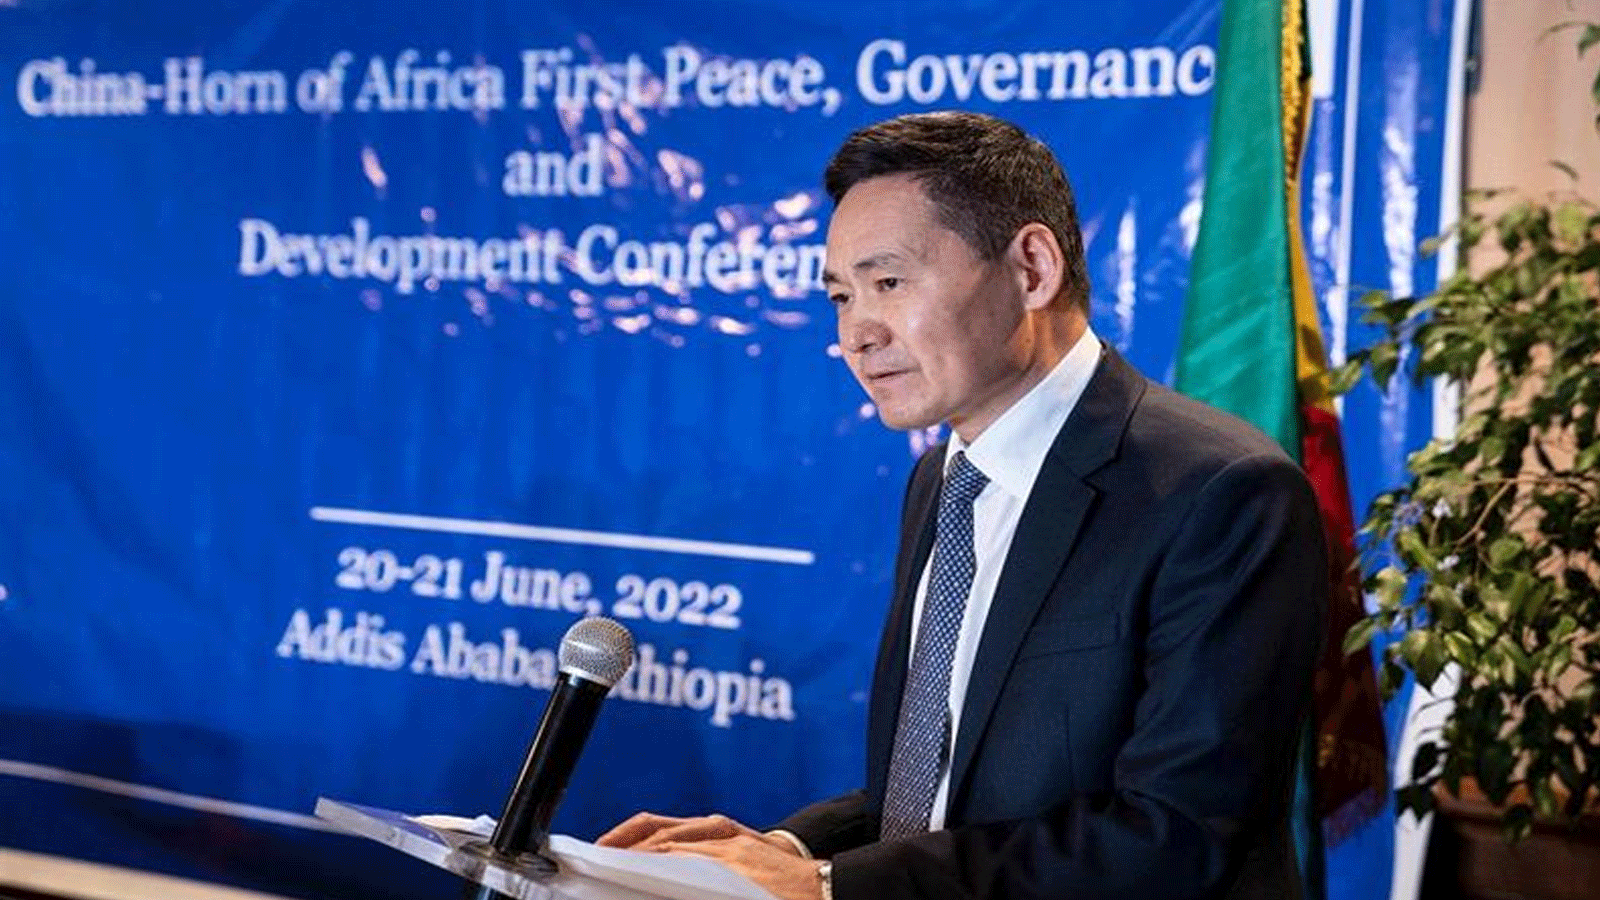 شو بينغ، المبعوث الصيني الخاص إلى القرن الأفريقي، يتحدث خلال مؤتمر السلام الأول للقرن الأفريقي في أديس أبابا، إثيوبيا. في 20 حزيران\يونيو 2022.